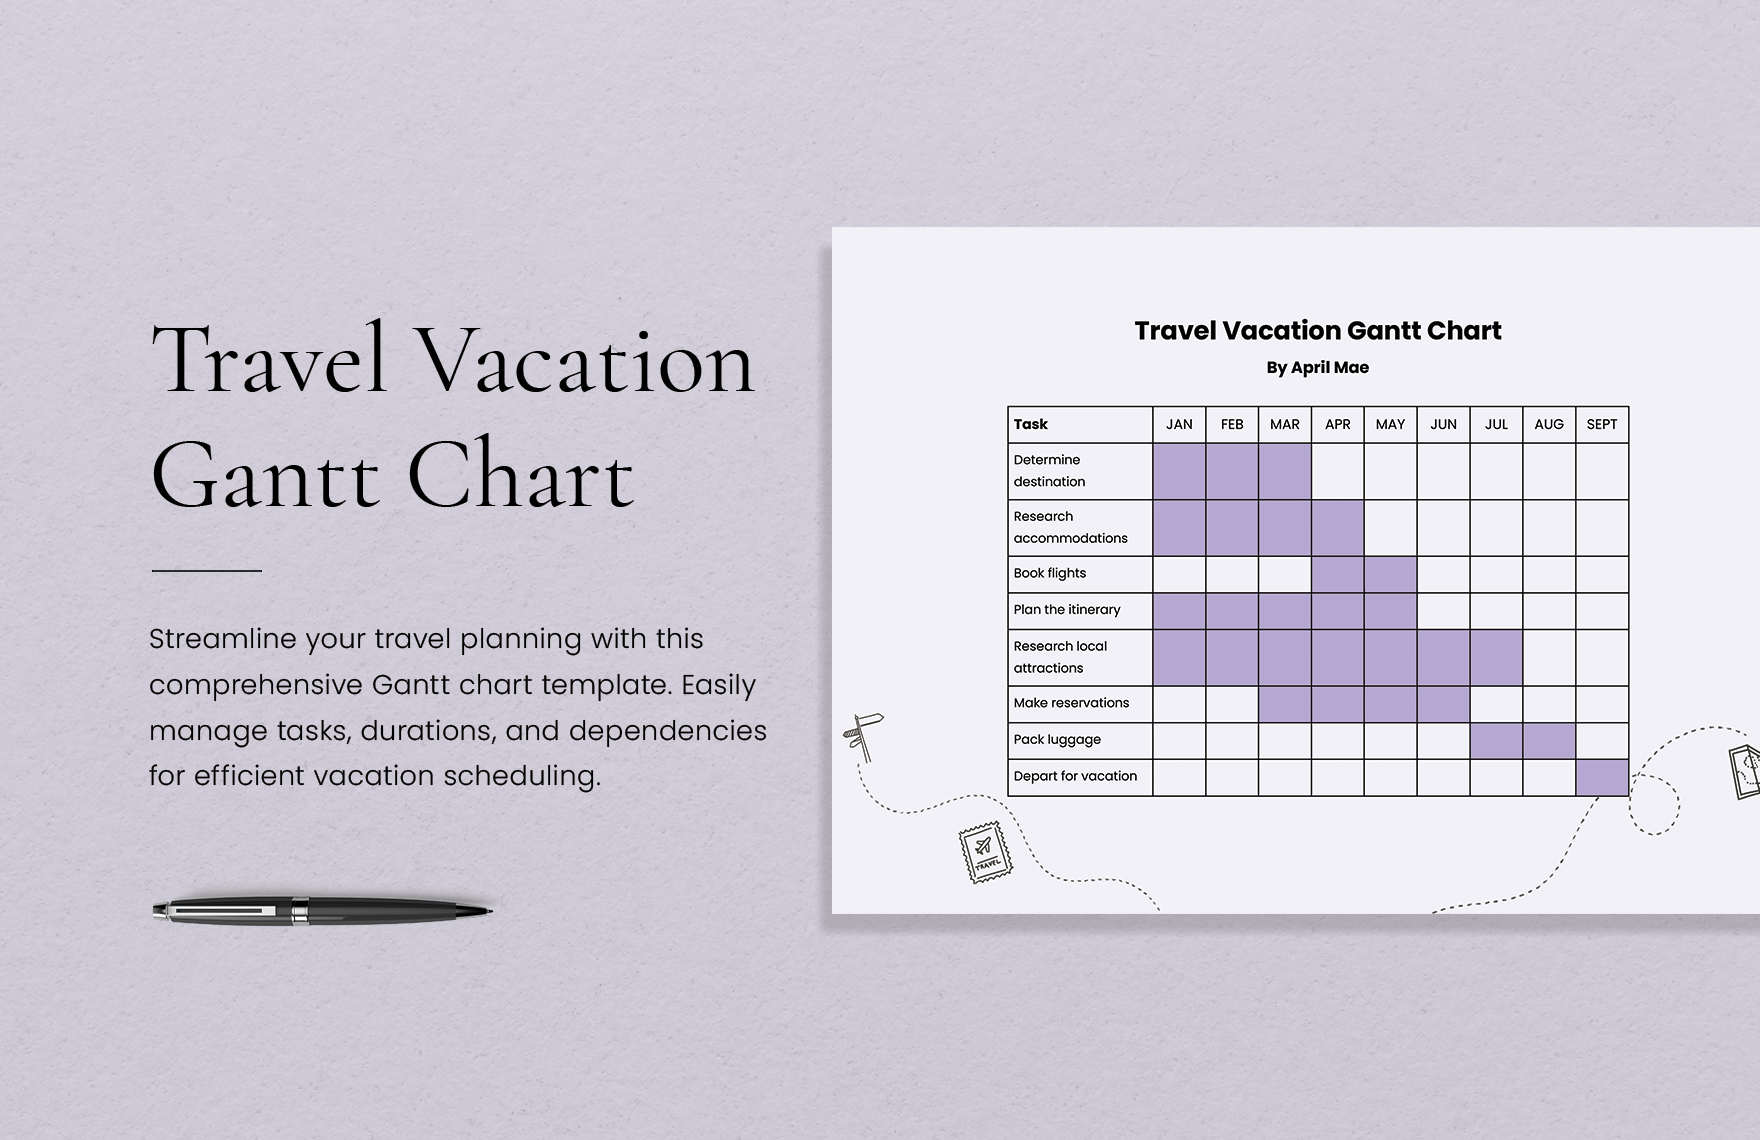 Travel Vacation Gantt Chart Template